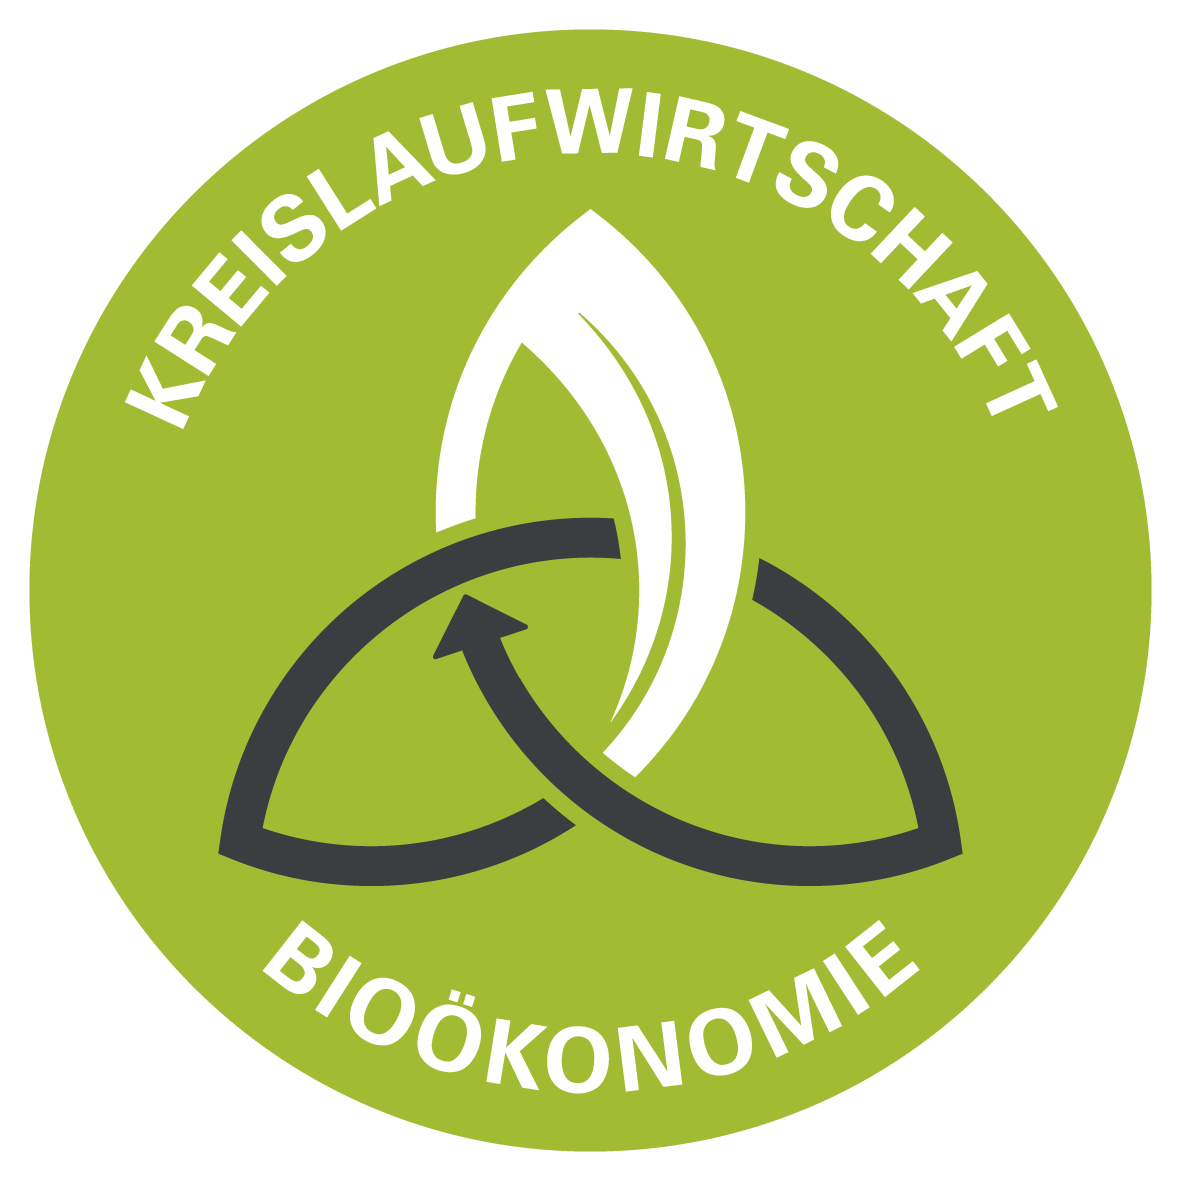 Kreislaufwirtschaft Bioökonomie Logo